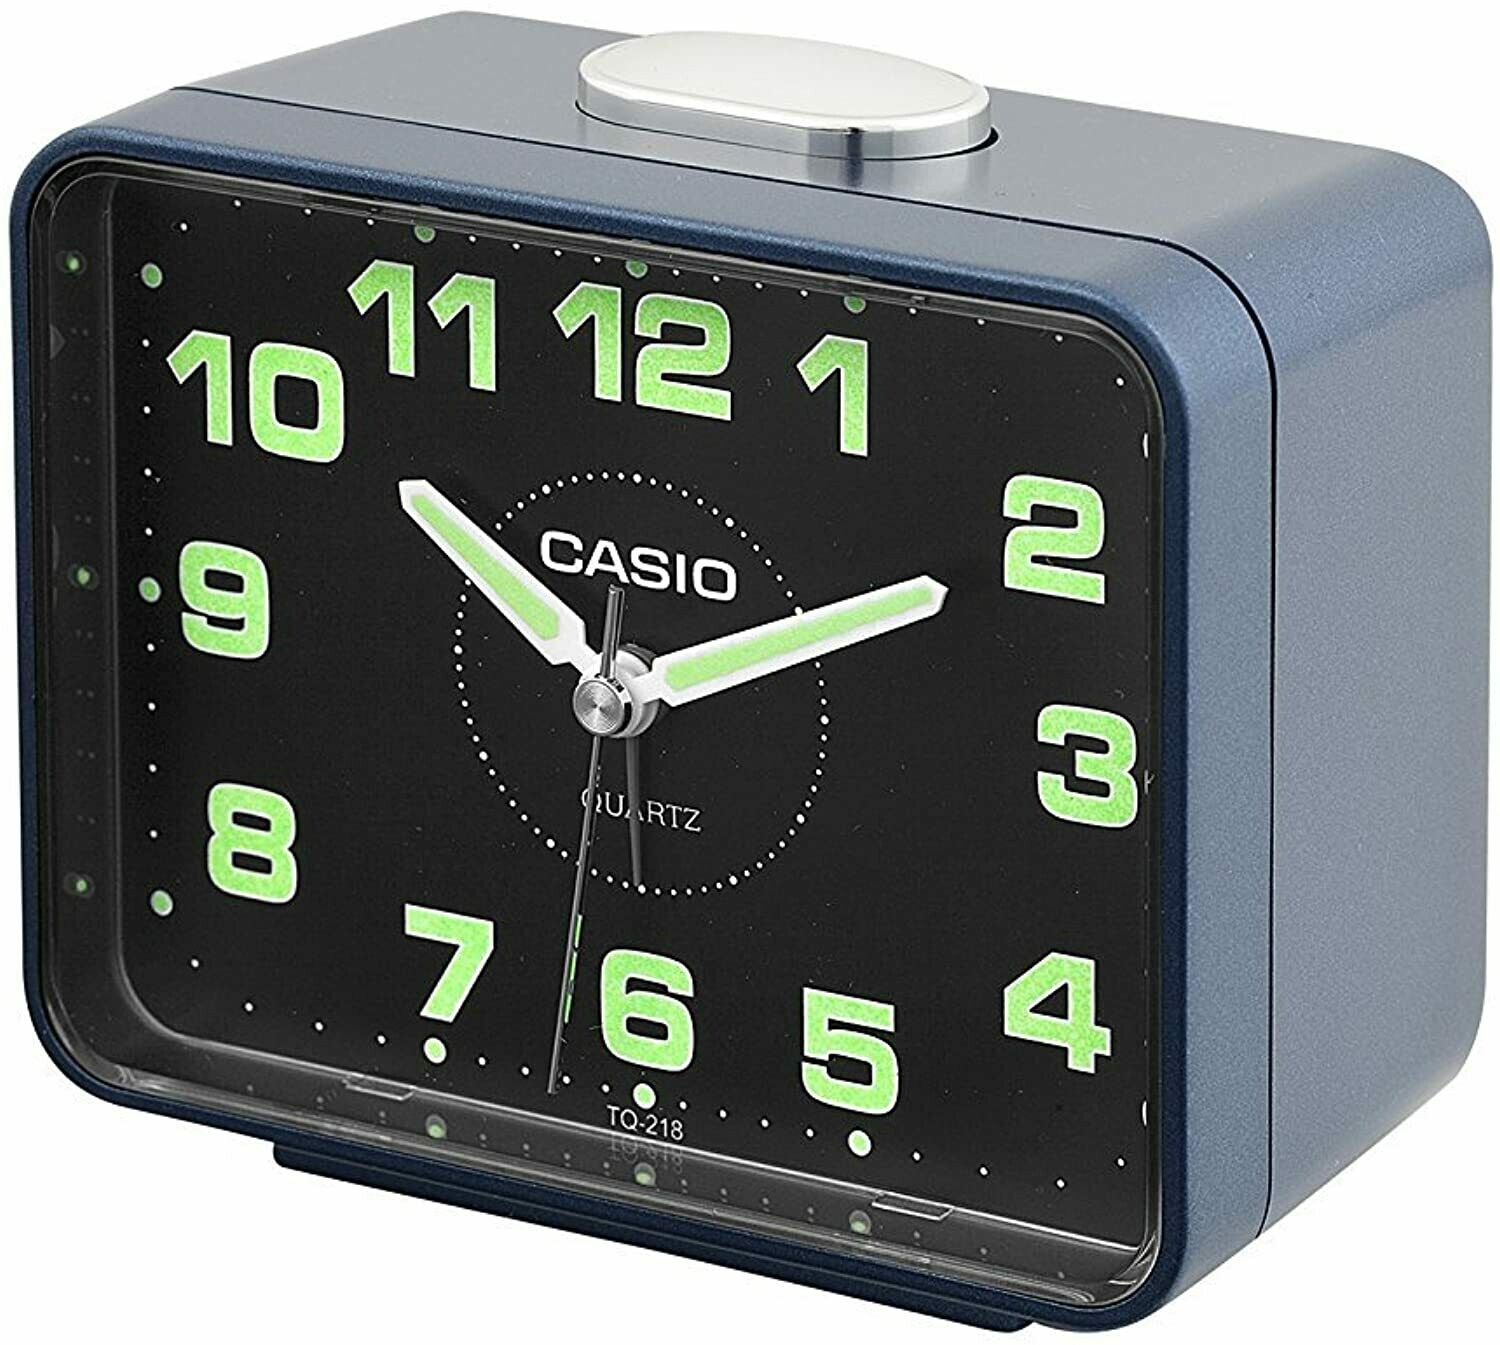 Reloj Casio Despertador TQ-218-2D